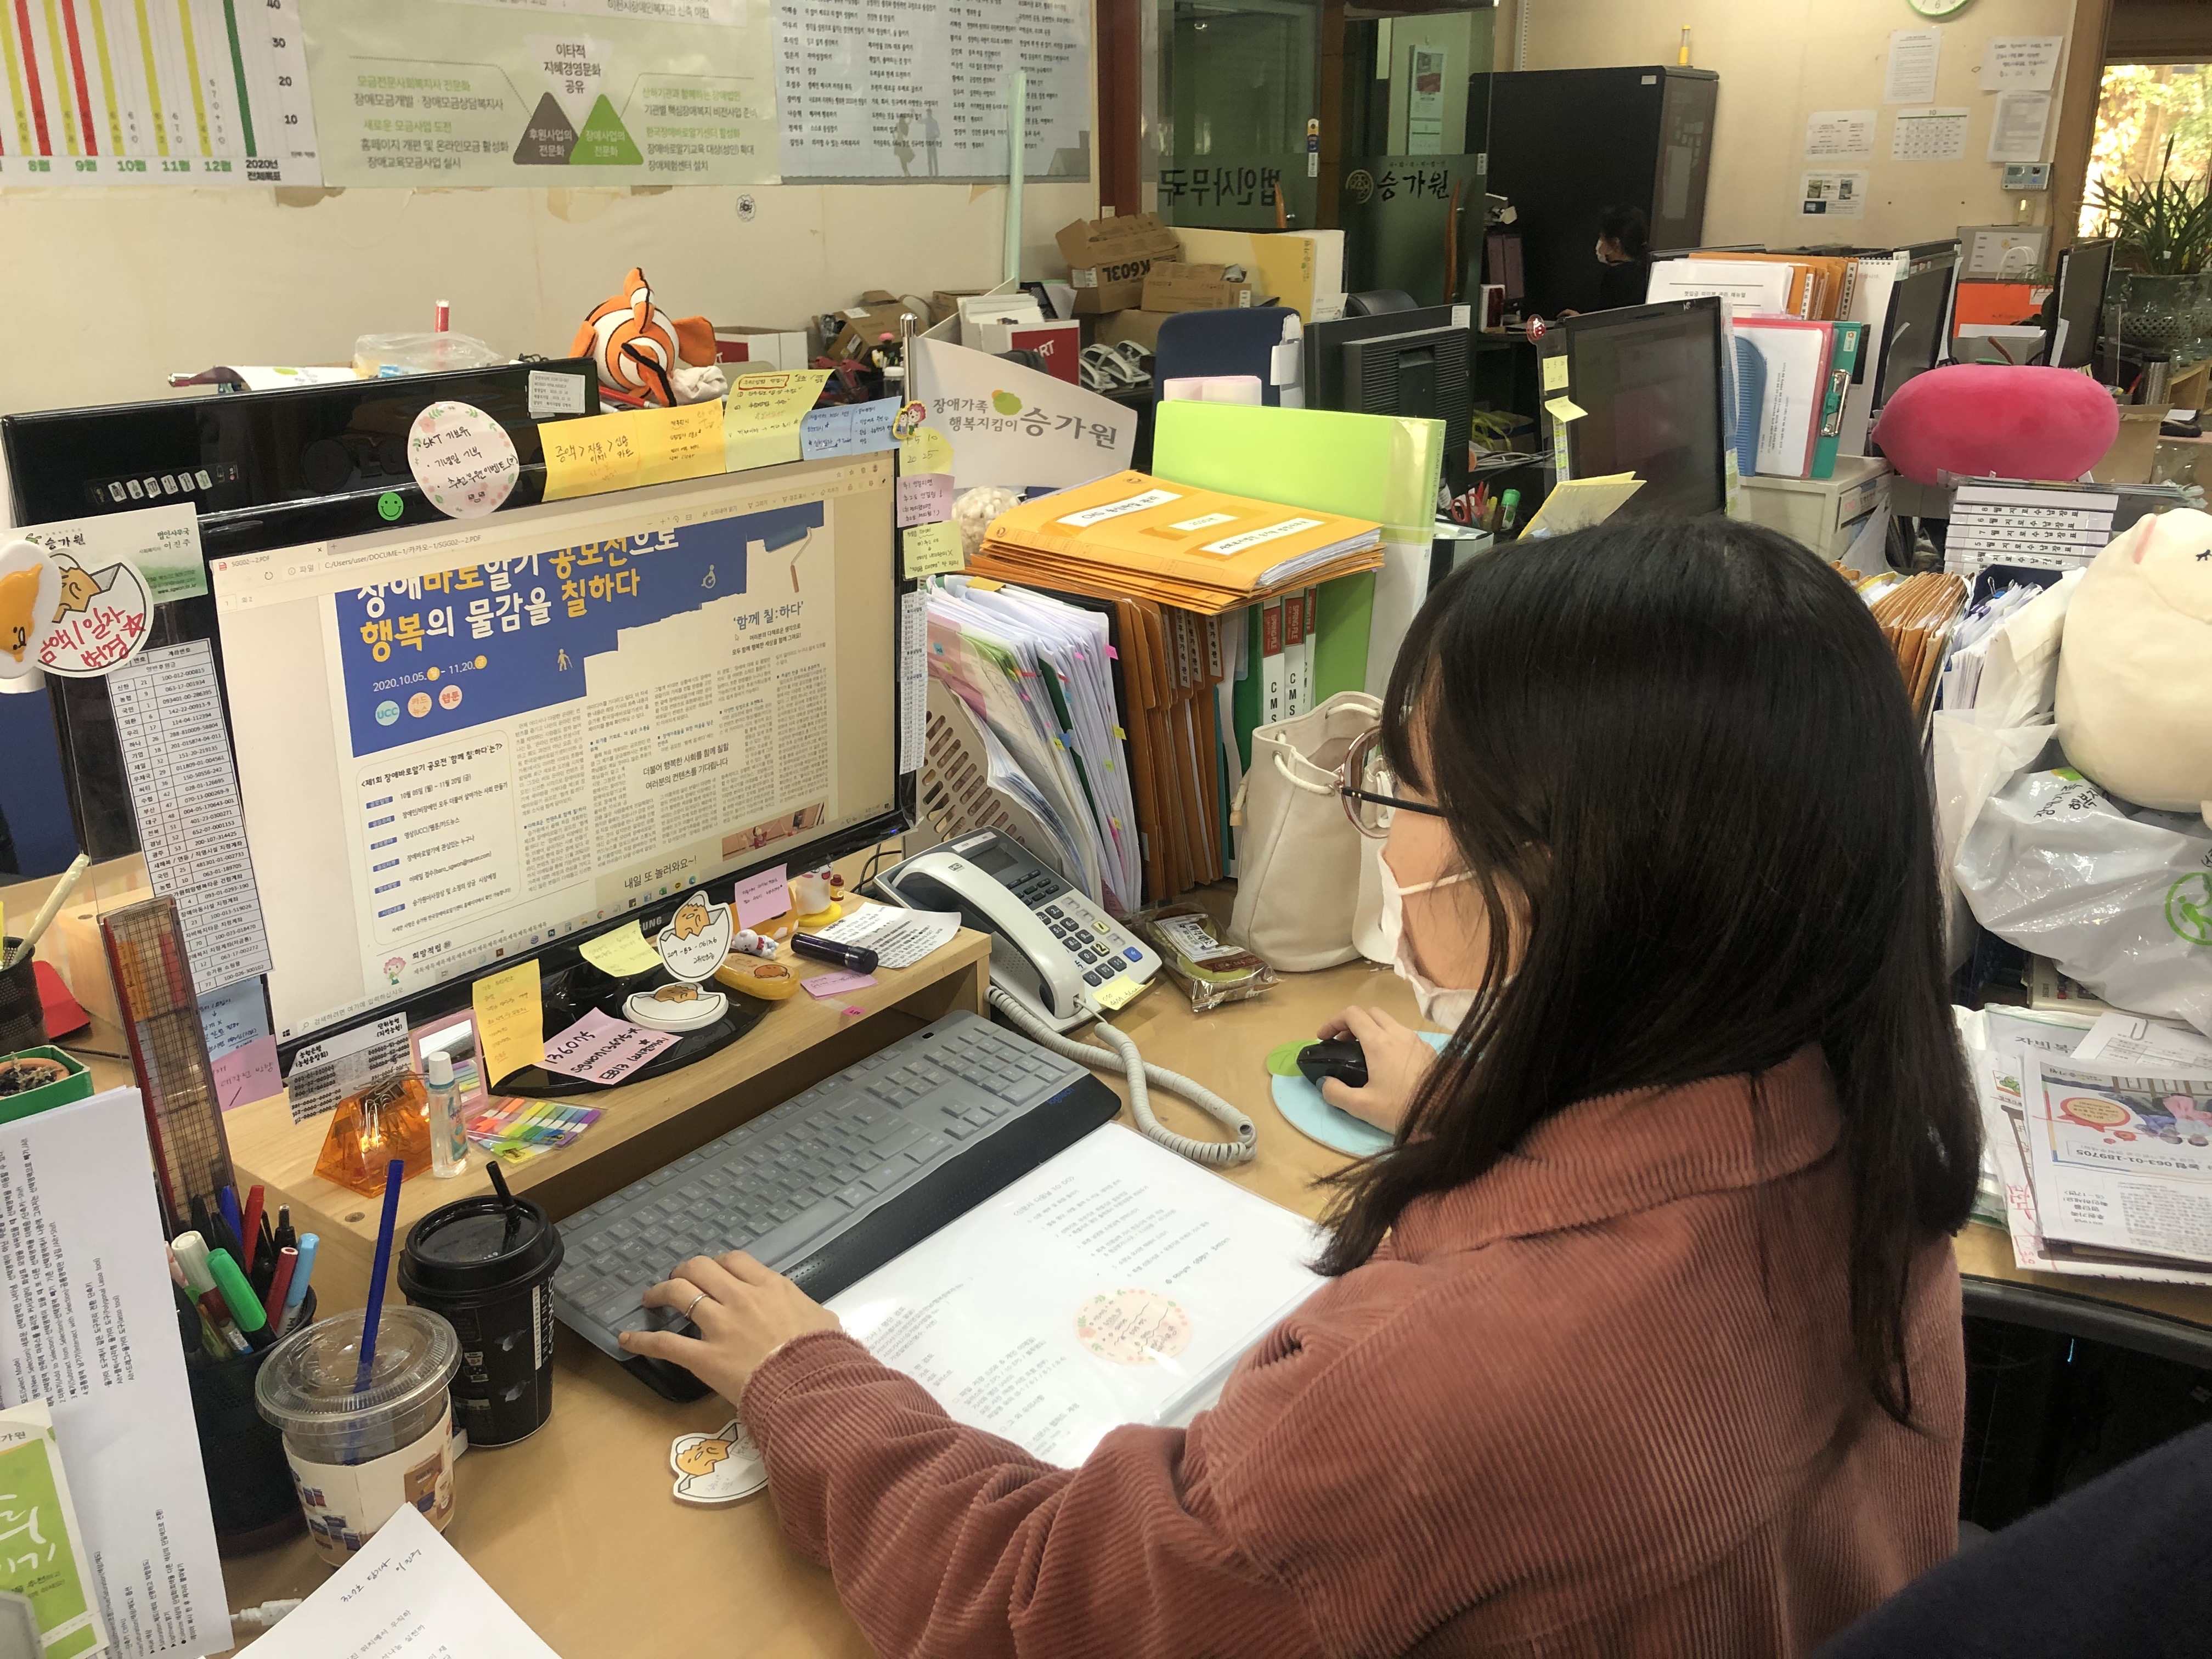 신문제작 작업을 위해 '장애바로알기 공모전으로 행복의 물감을 칠하다'라고 적혀있는 신문판을 보고 있는 여자 근무가족